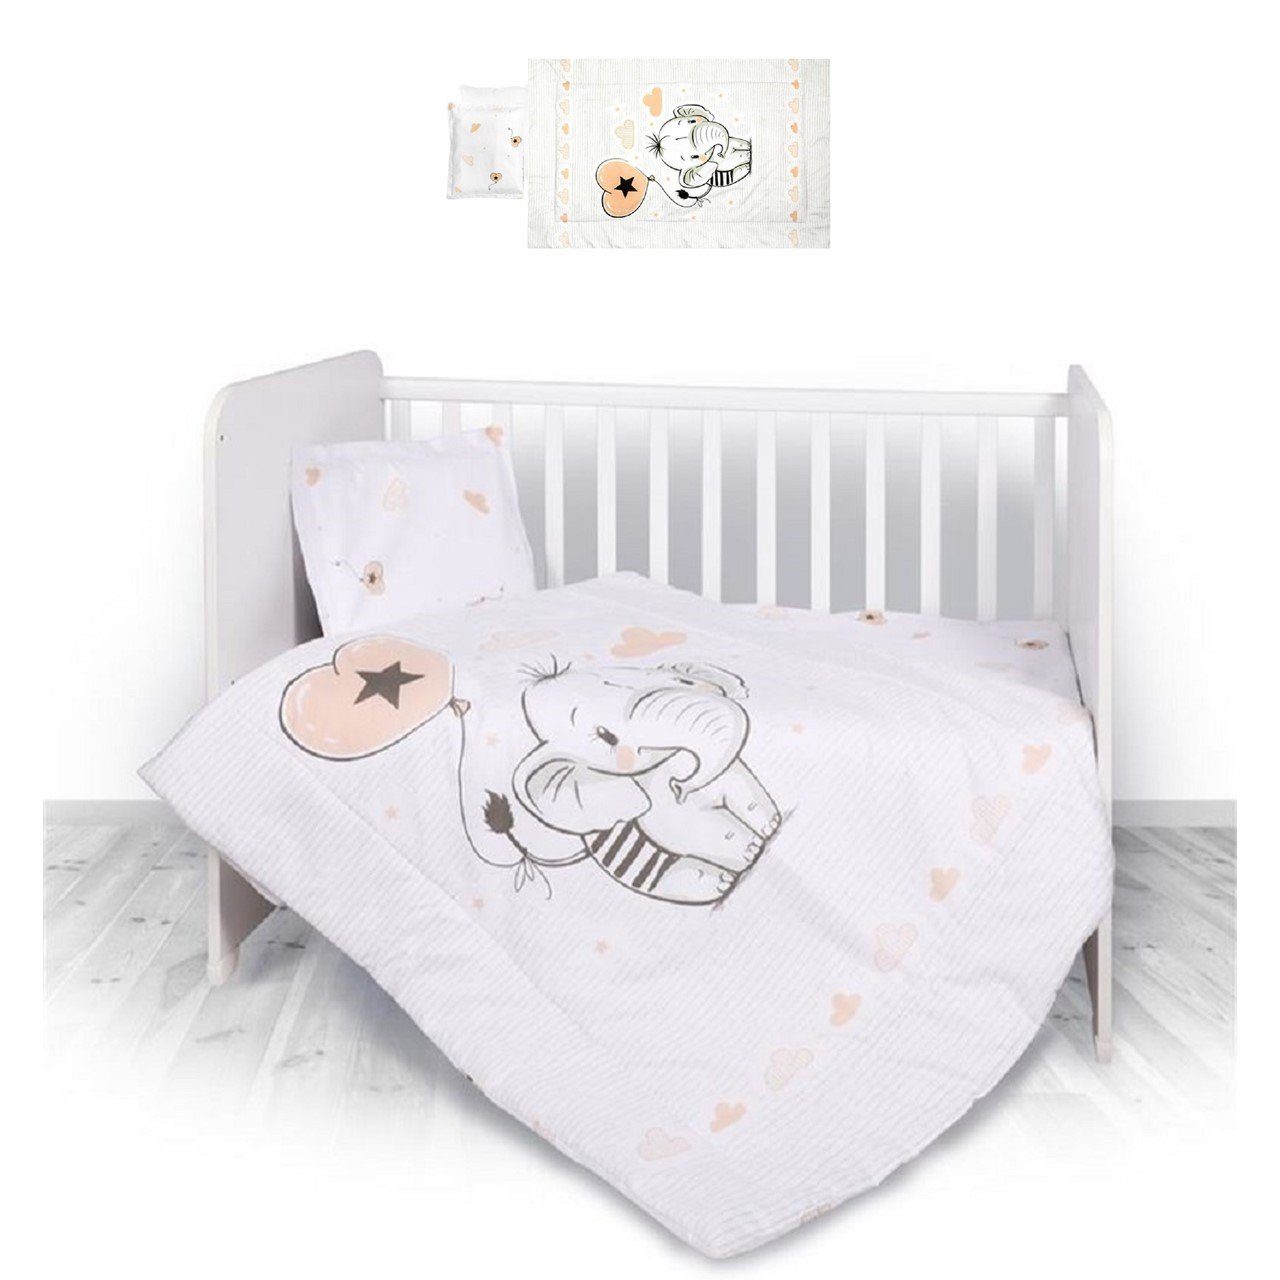 Magnolia ÖKO-TEX zertifiziert Doppelseitig Baby Bettwäsche 75x100 cm und Kissen 30x40cm Bellochi Multifunktional Baby Decke Set aus 100% Baumwolle 